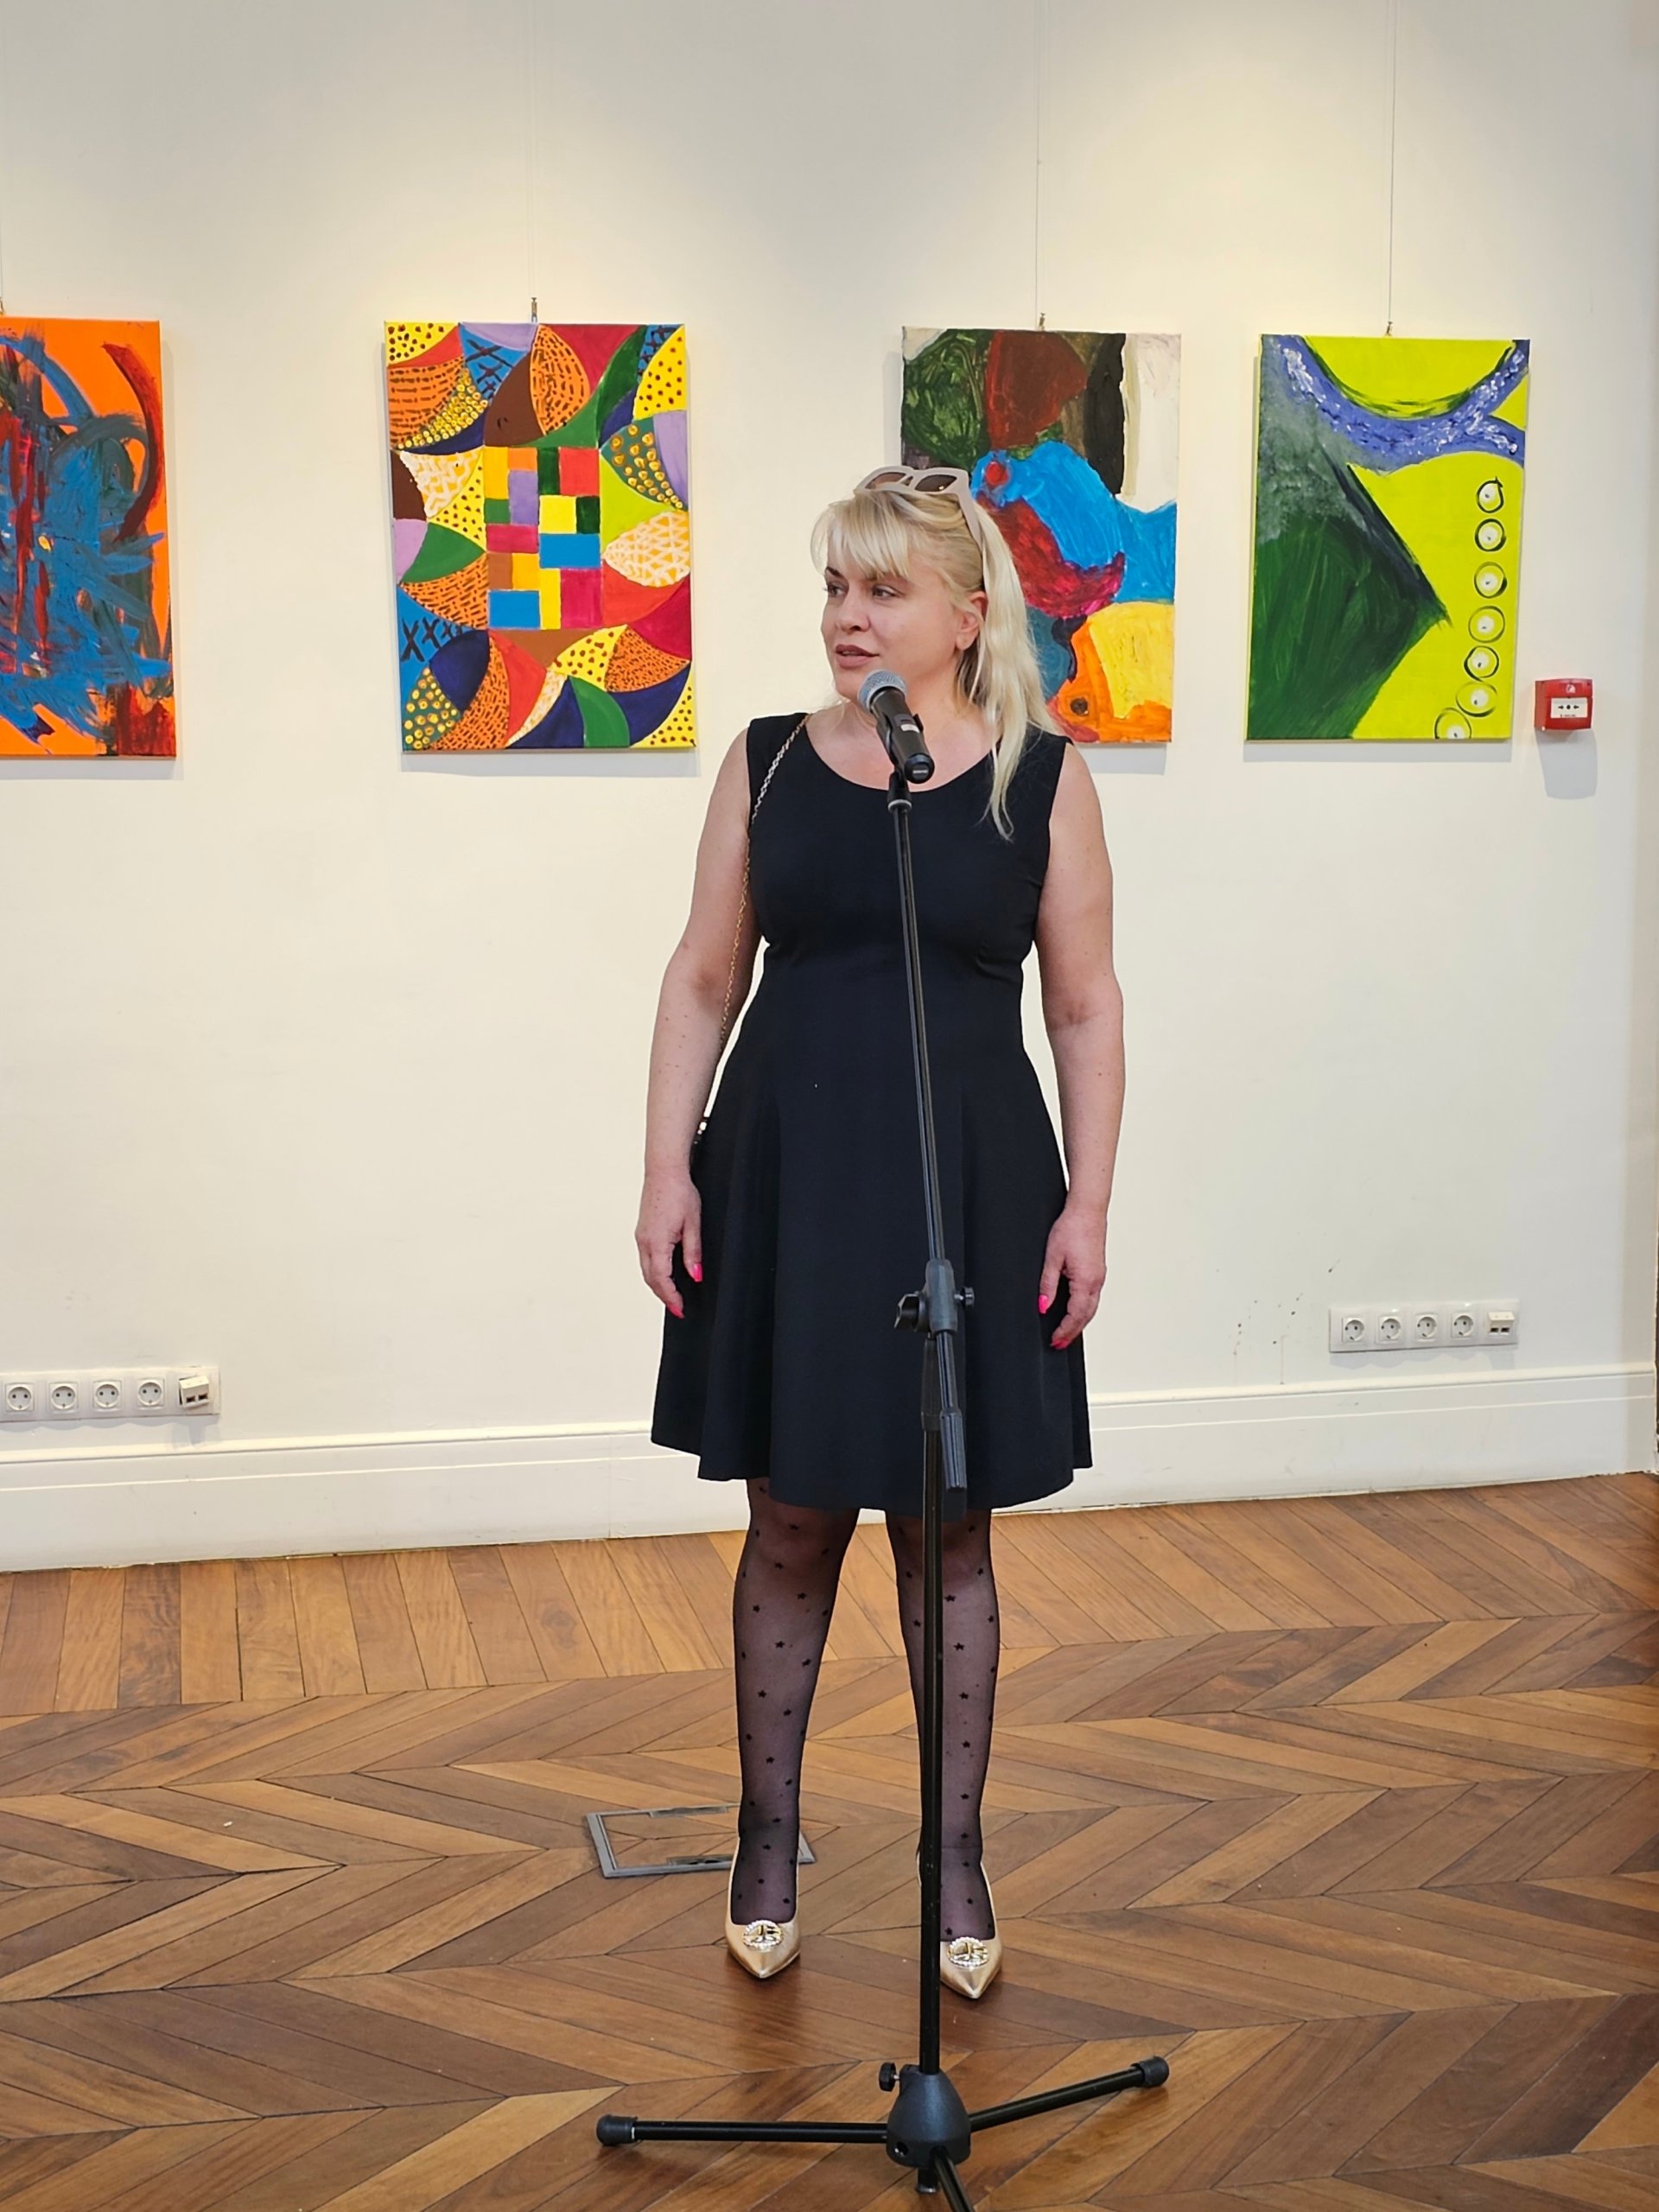 Мая Станчева – Изпълнителен директор и Член на Управителния съвет на „Инвестбанк“ АД открива изложбата.